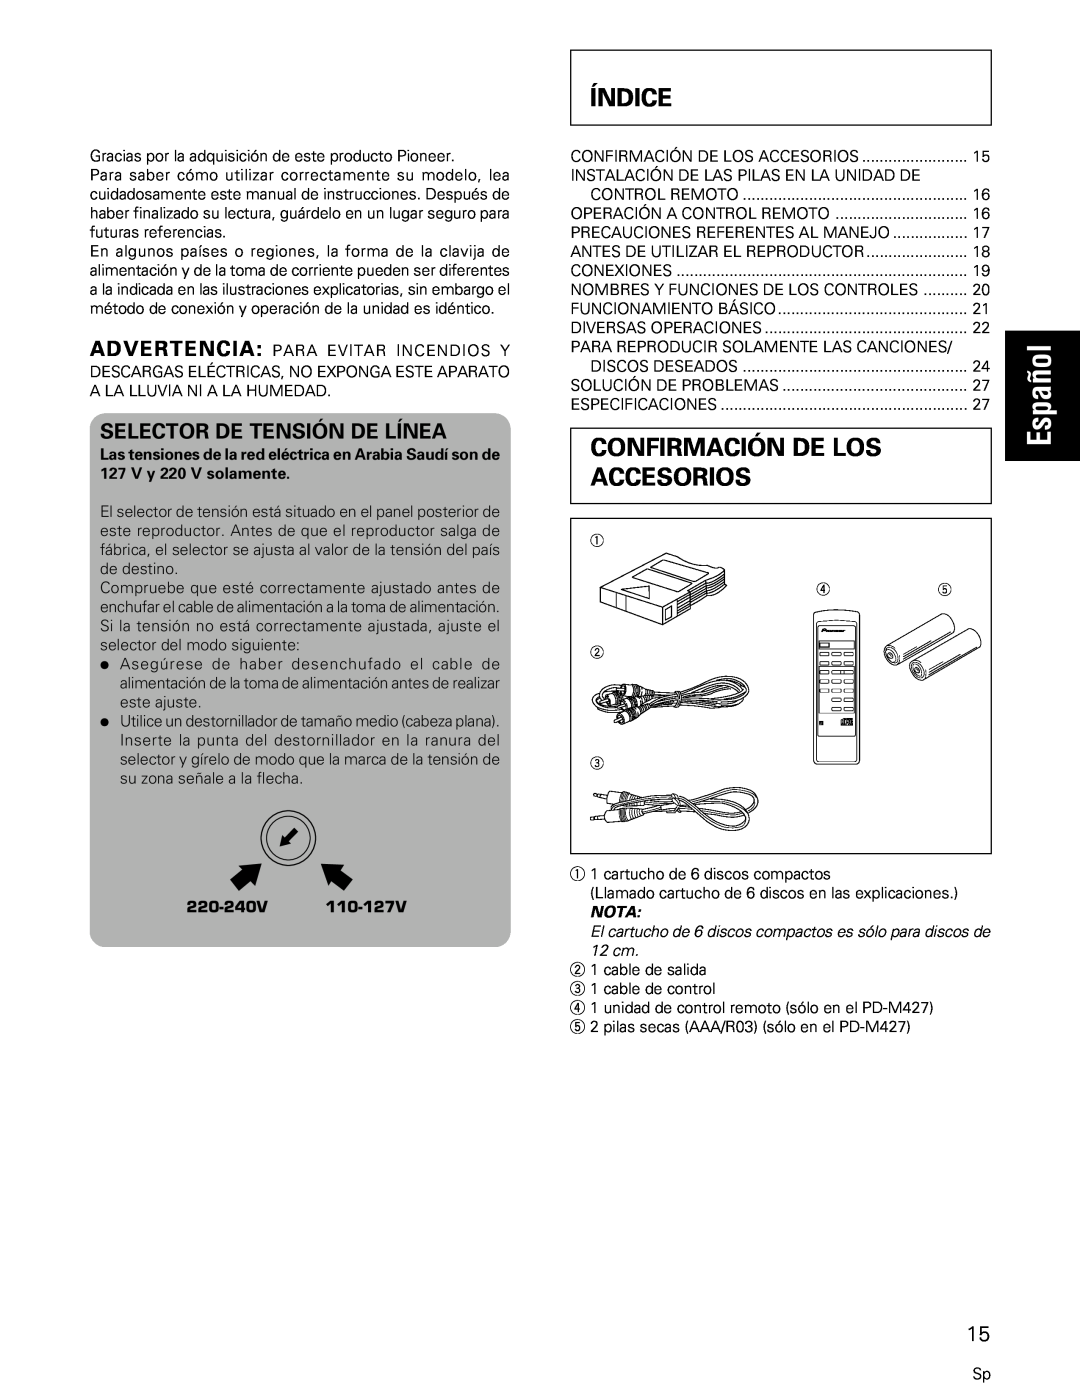 Pioneer PD-M427, PD-M407 manual Español, Índice, Confirmación De Los, Accesorios, Nota 